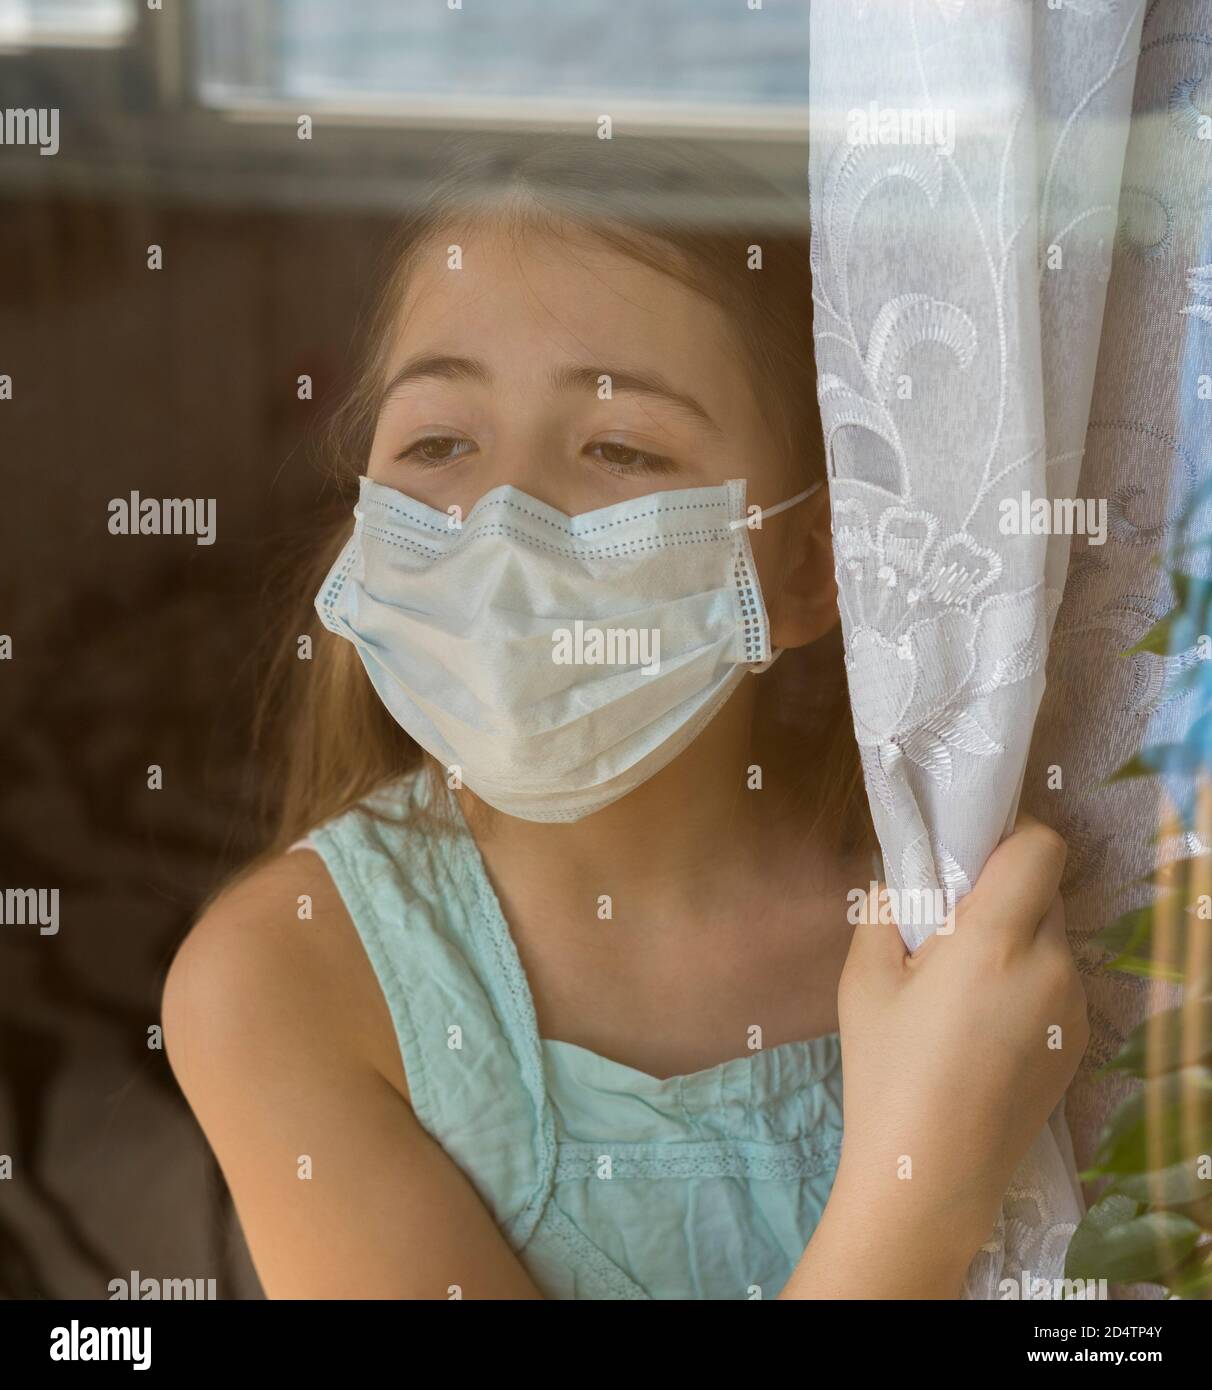 Bleiben Sie zu Hause Quarantäne Coronavirus Pandemie Prävention. Trauriges Kind in schützender medizinischer Maske schaut aus dem Fenster. Blick von der Straße. Prävention Epidemie. Stockfoto